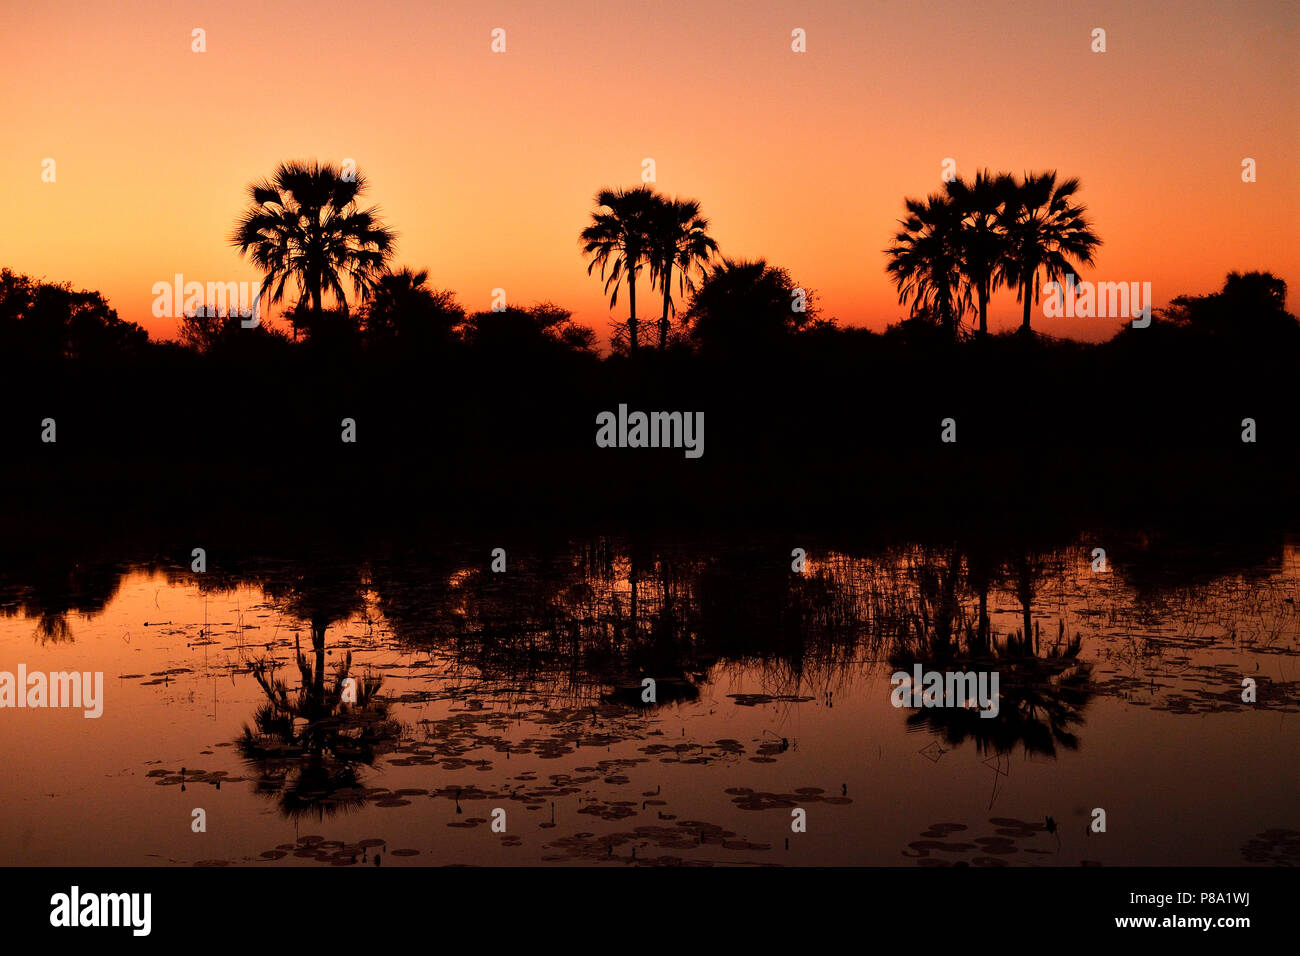 Roter Sonnenuntergang, Palmen im Wasser spiegelt, Okavango Delta, Botswana Stockfoto